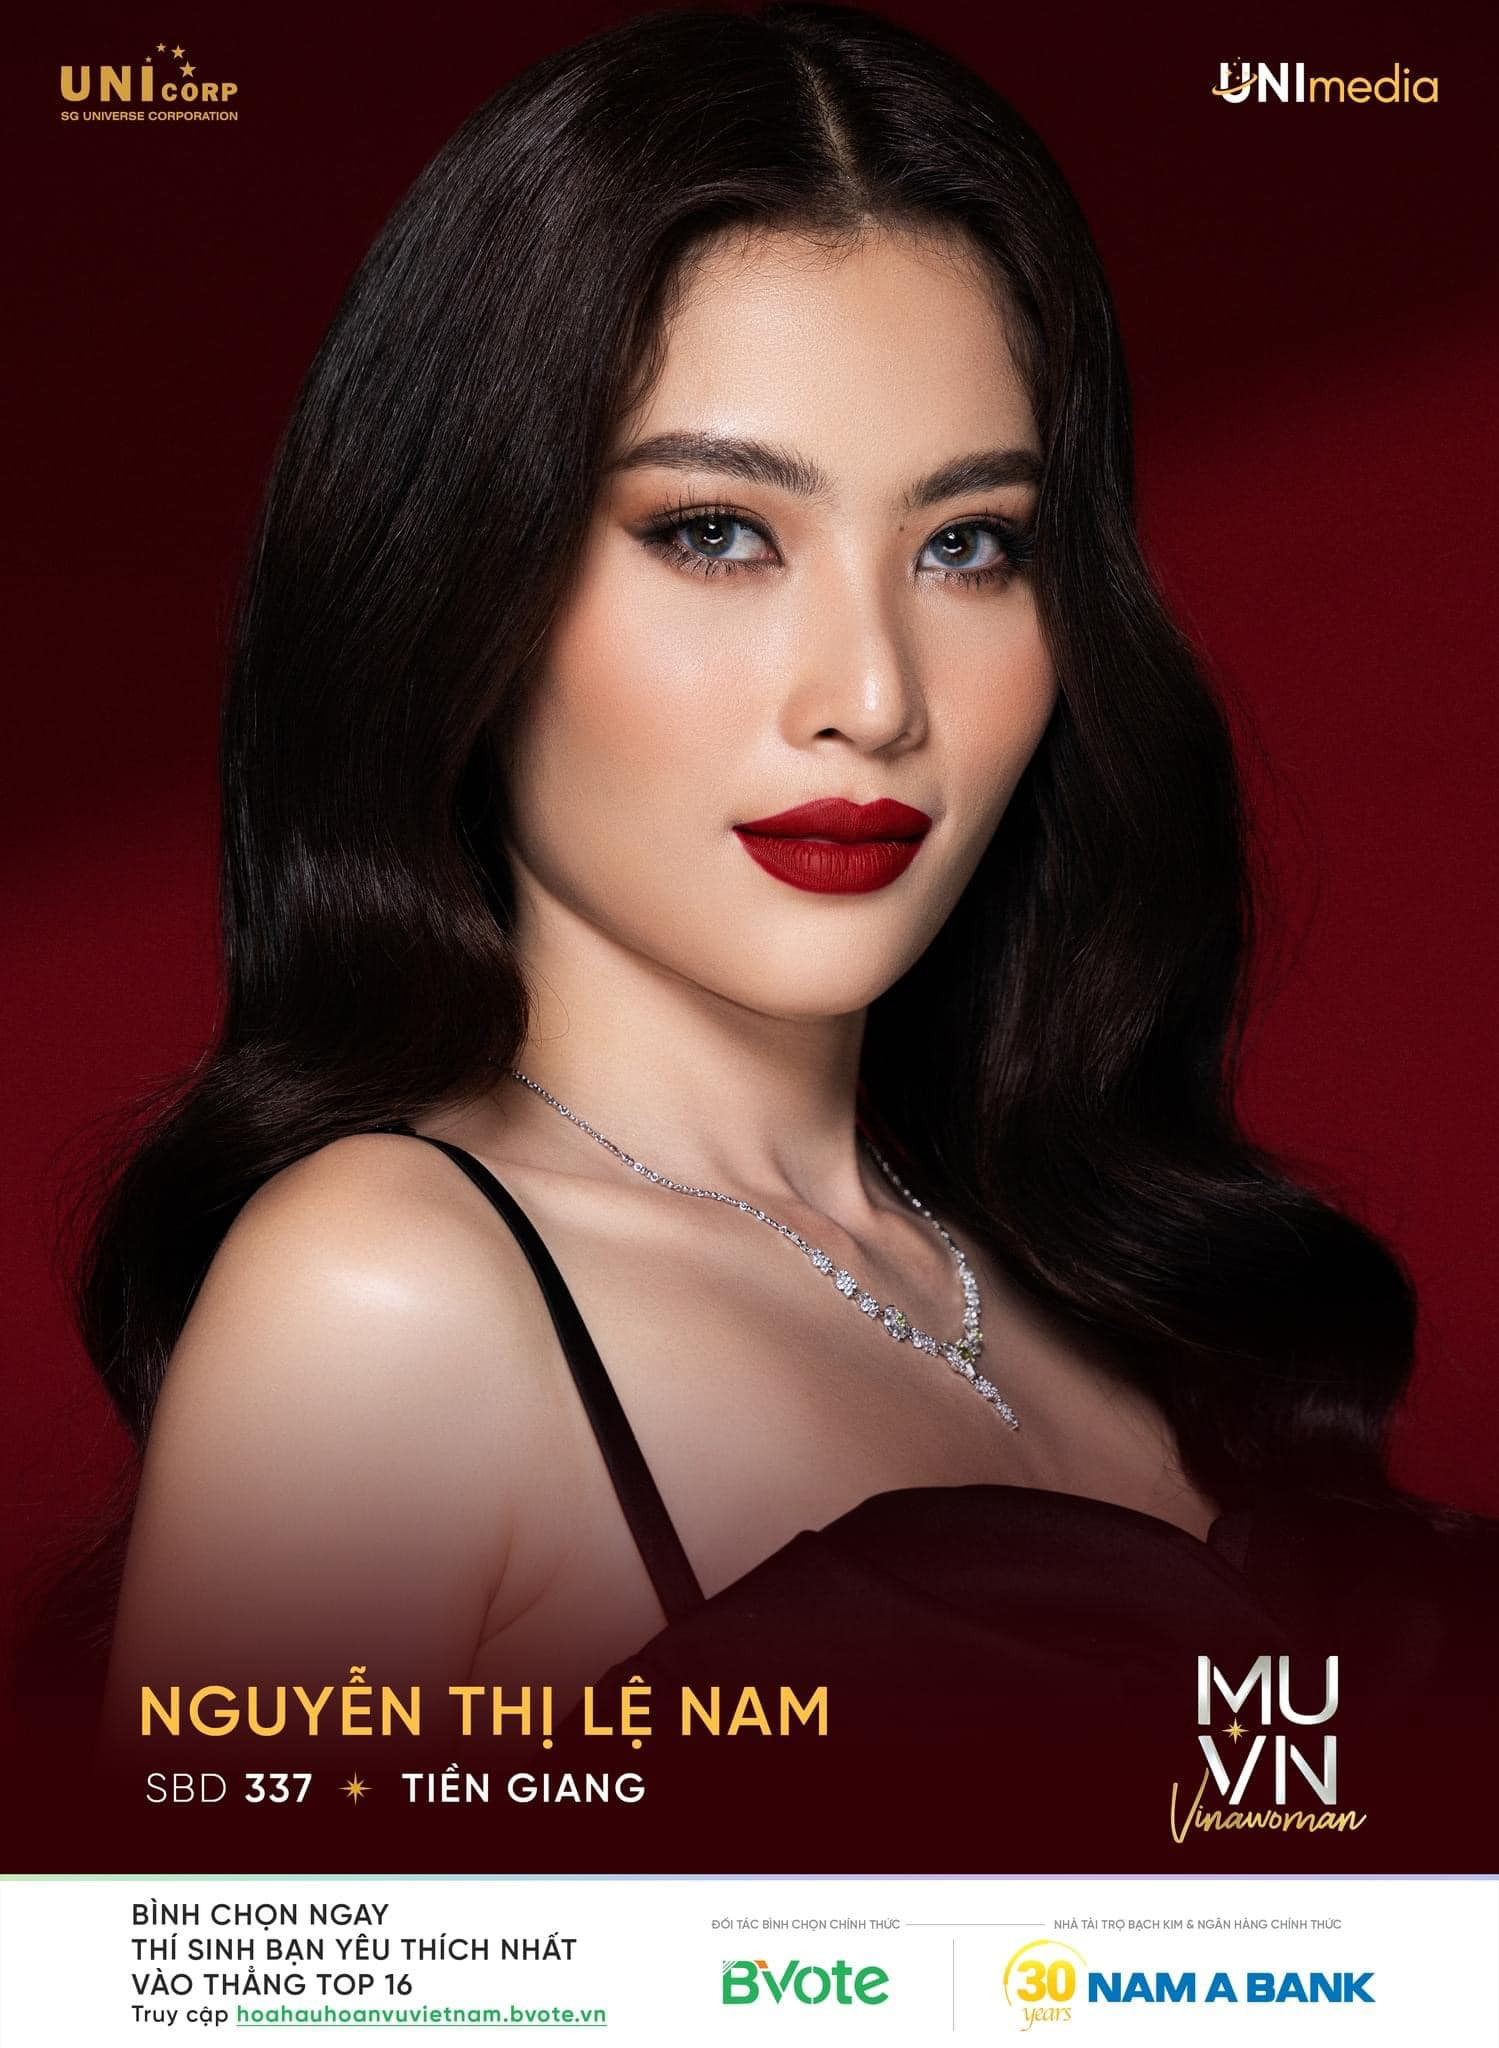 Nguyễn Thị Ngọc Châu - SBD 314 vence miss universe vietnam 2022. - Página 5 VW20il